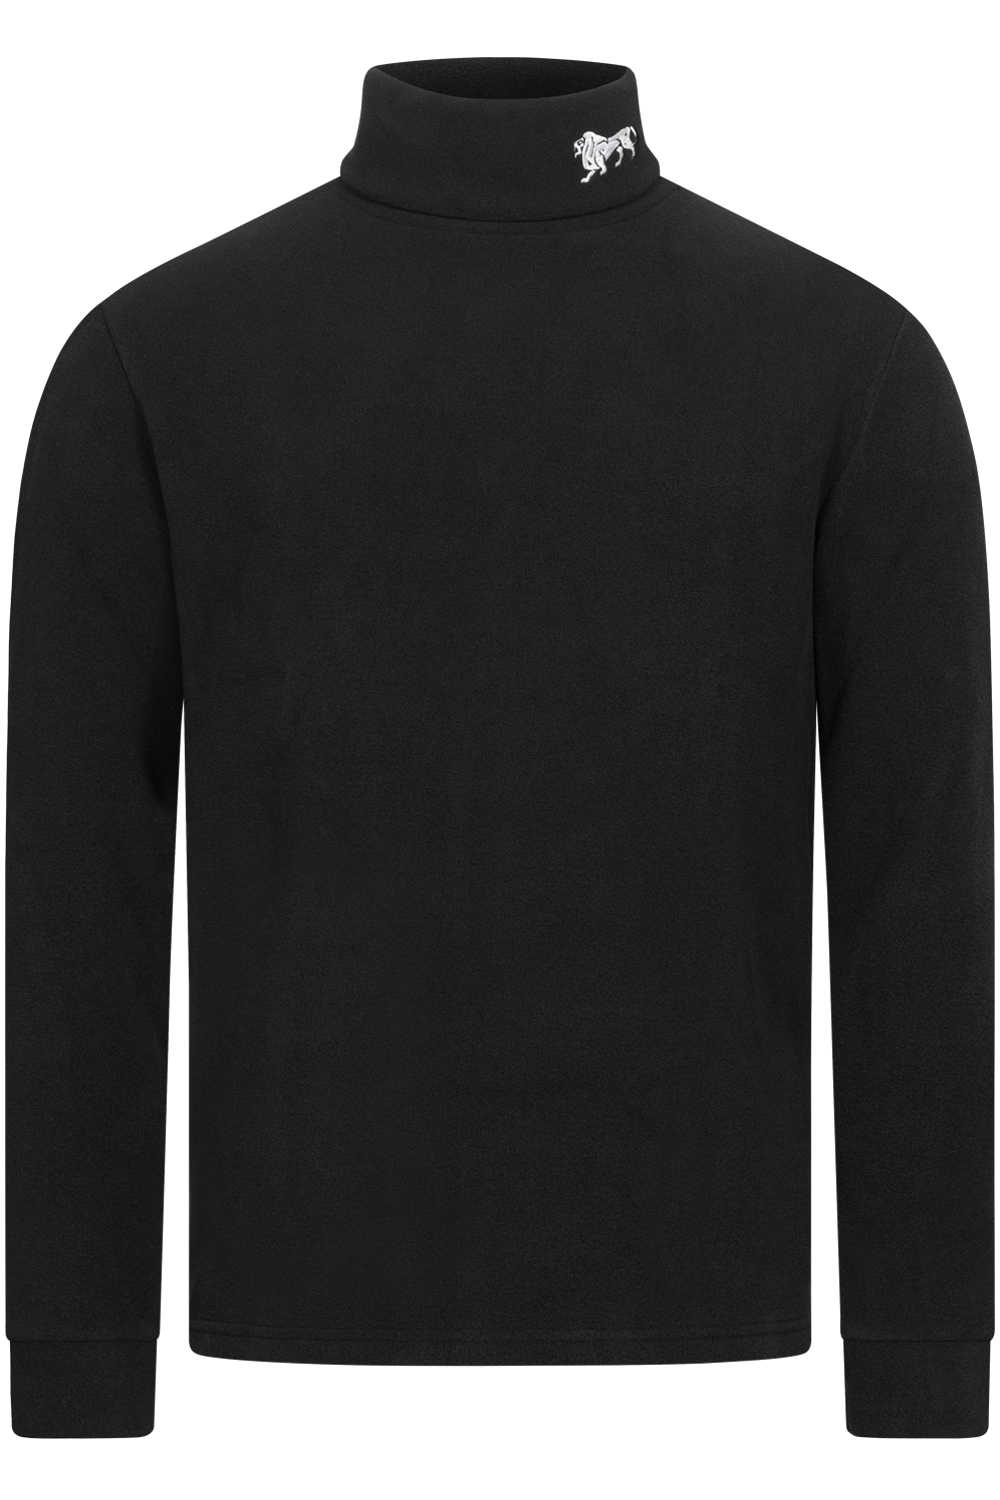 Pánske tričko Lonsdale 117106-Black/White